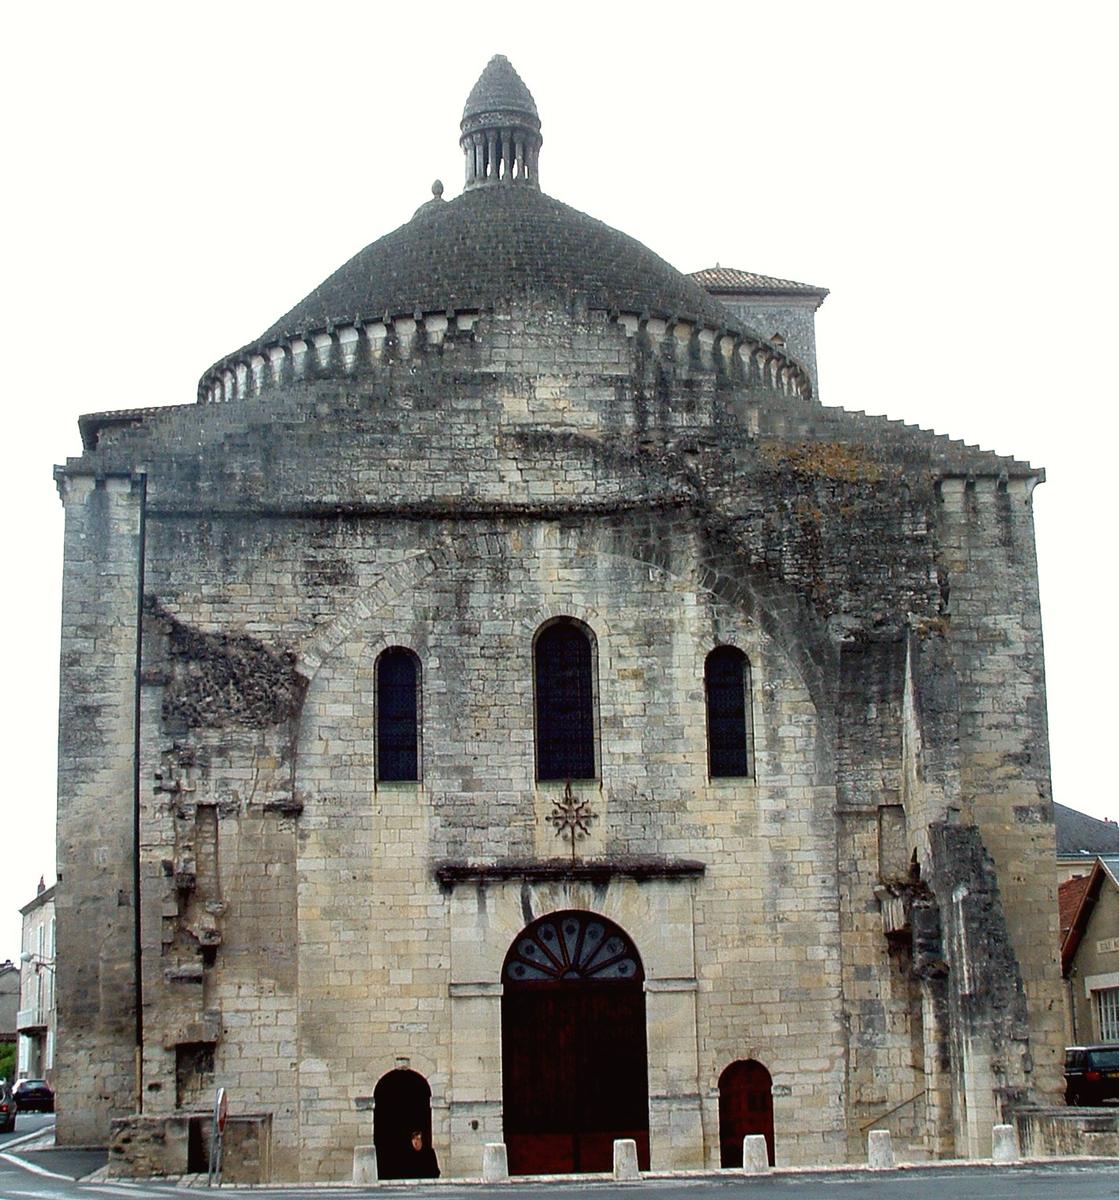 Eglise Saint-Etienne-la-Cité (former cathedral), Périgueux 